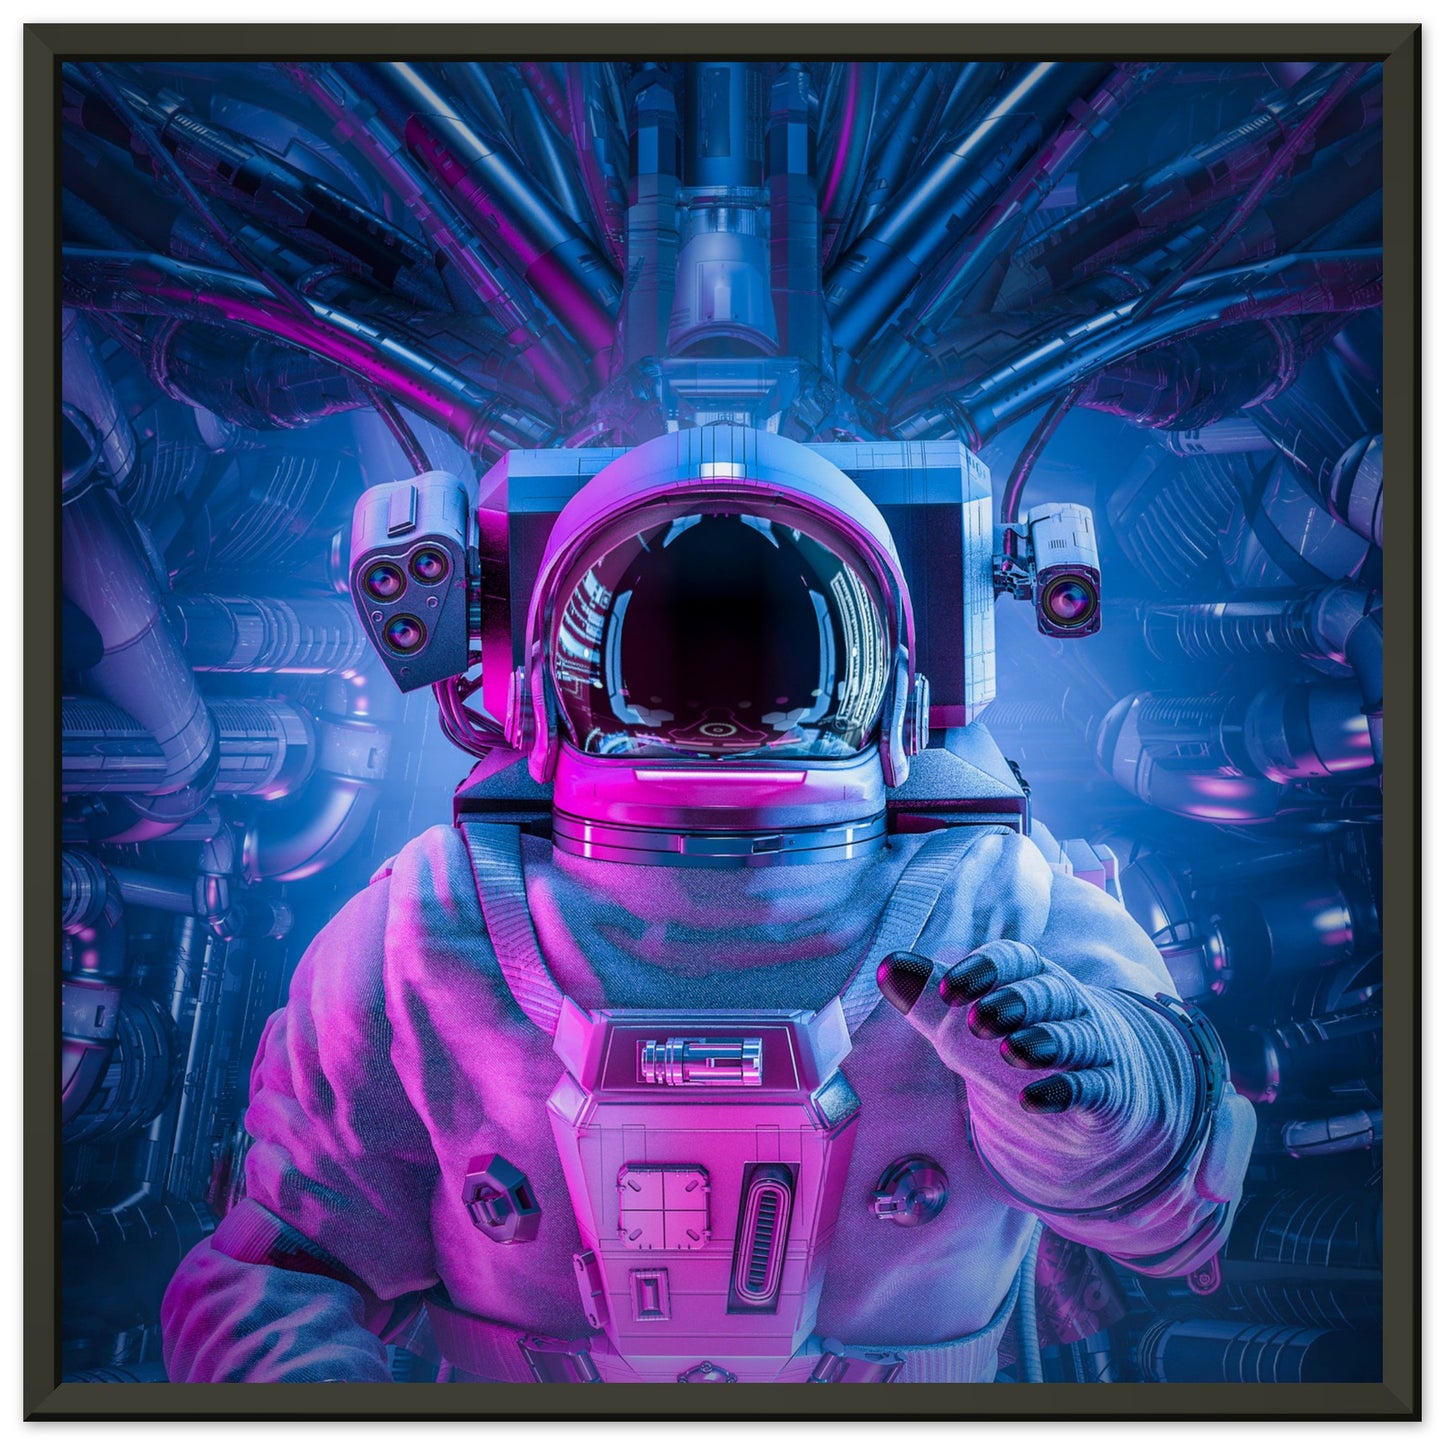 Space capsule astronaut